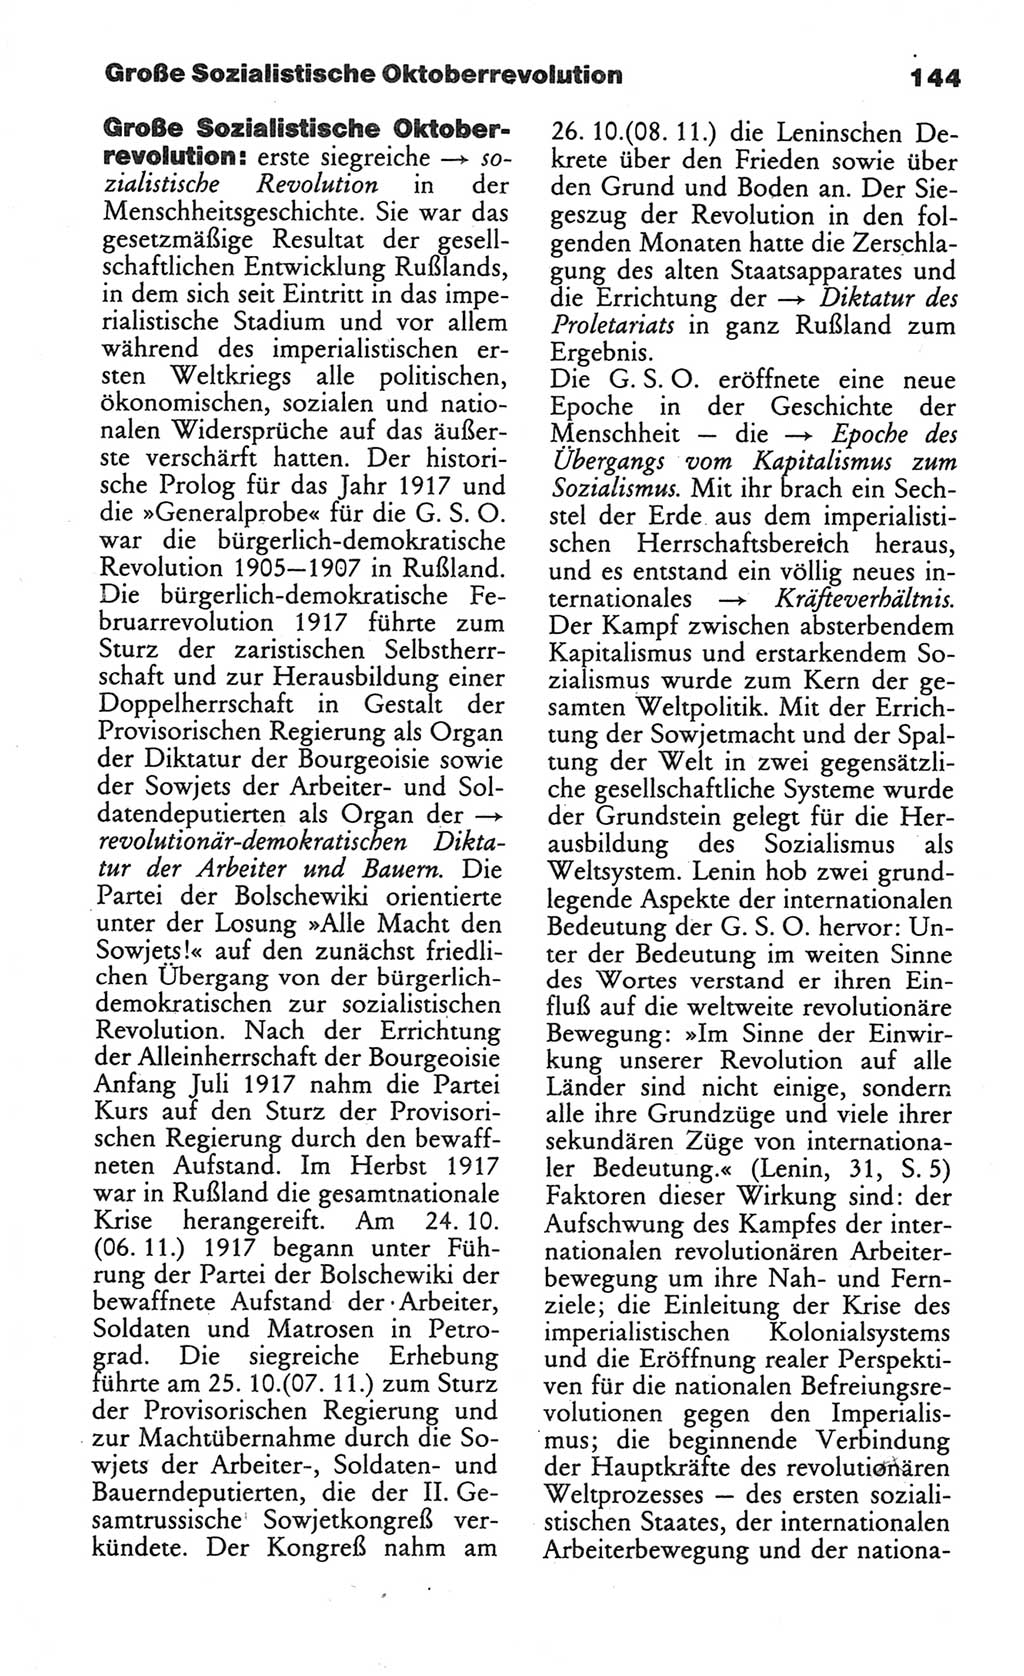 Wörterbuch des wissenschaftlichen Kommunismus [Deutsche Demokratische Republik (DDR)] 1984, Seite 144 (Wb. wiss. Komm. DDR 1984, S. 144)